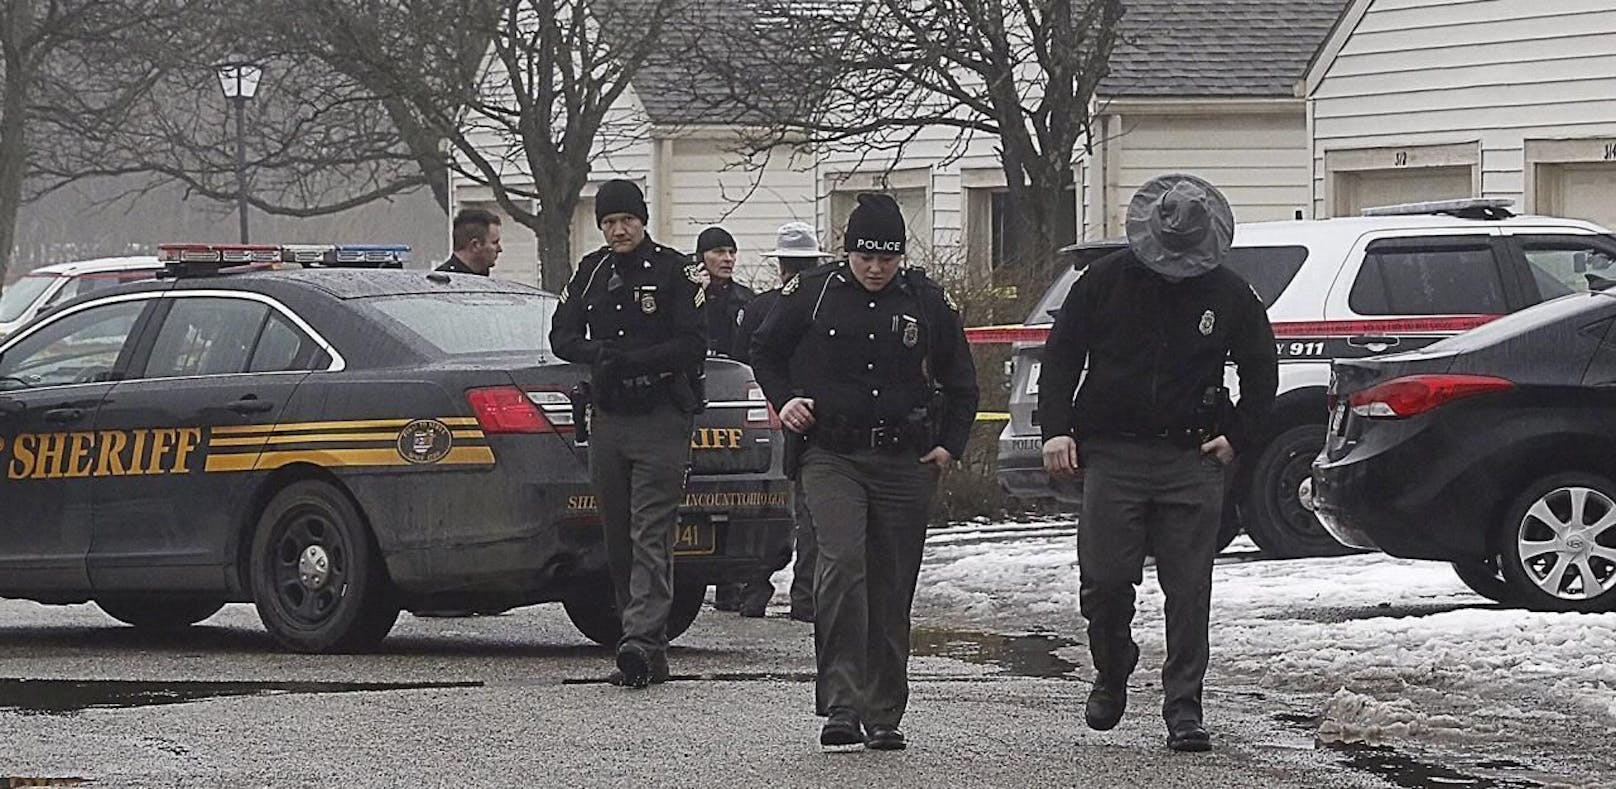 Streit wegen Drogen eskalierte: Polizei-Einsatz in Springfield. (Archivfoto)